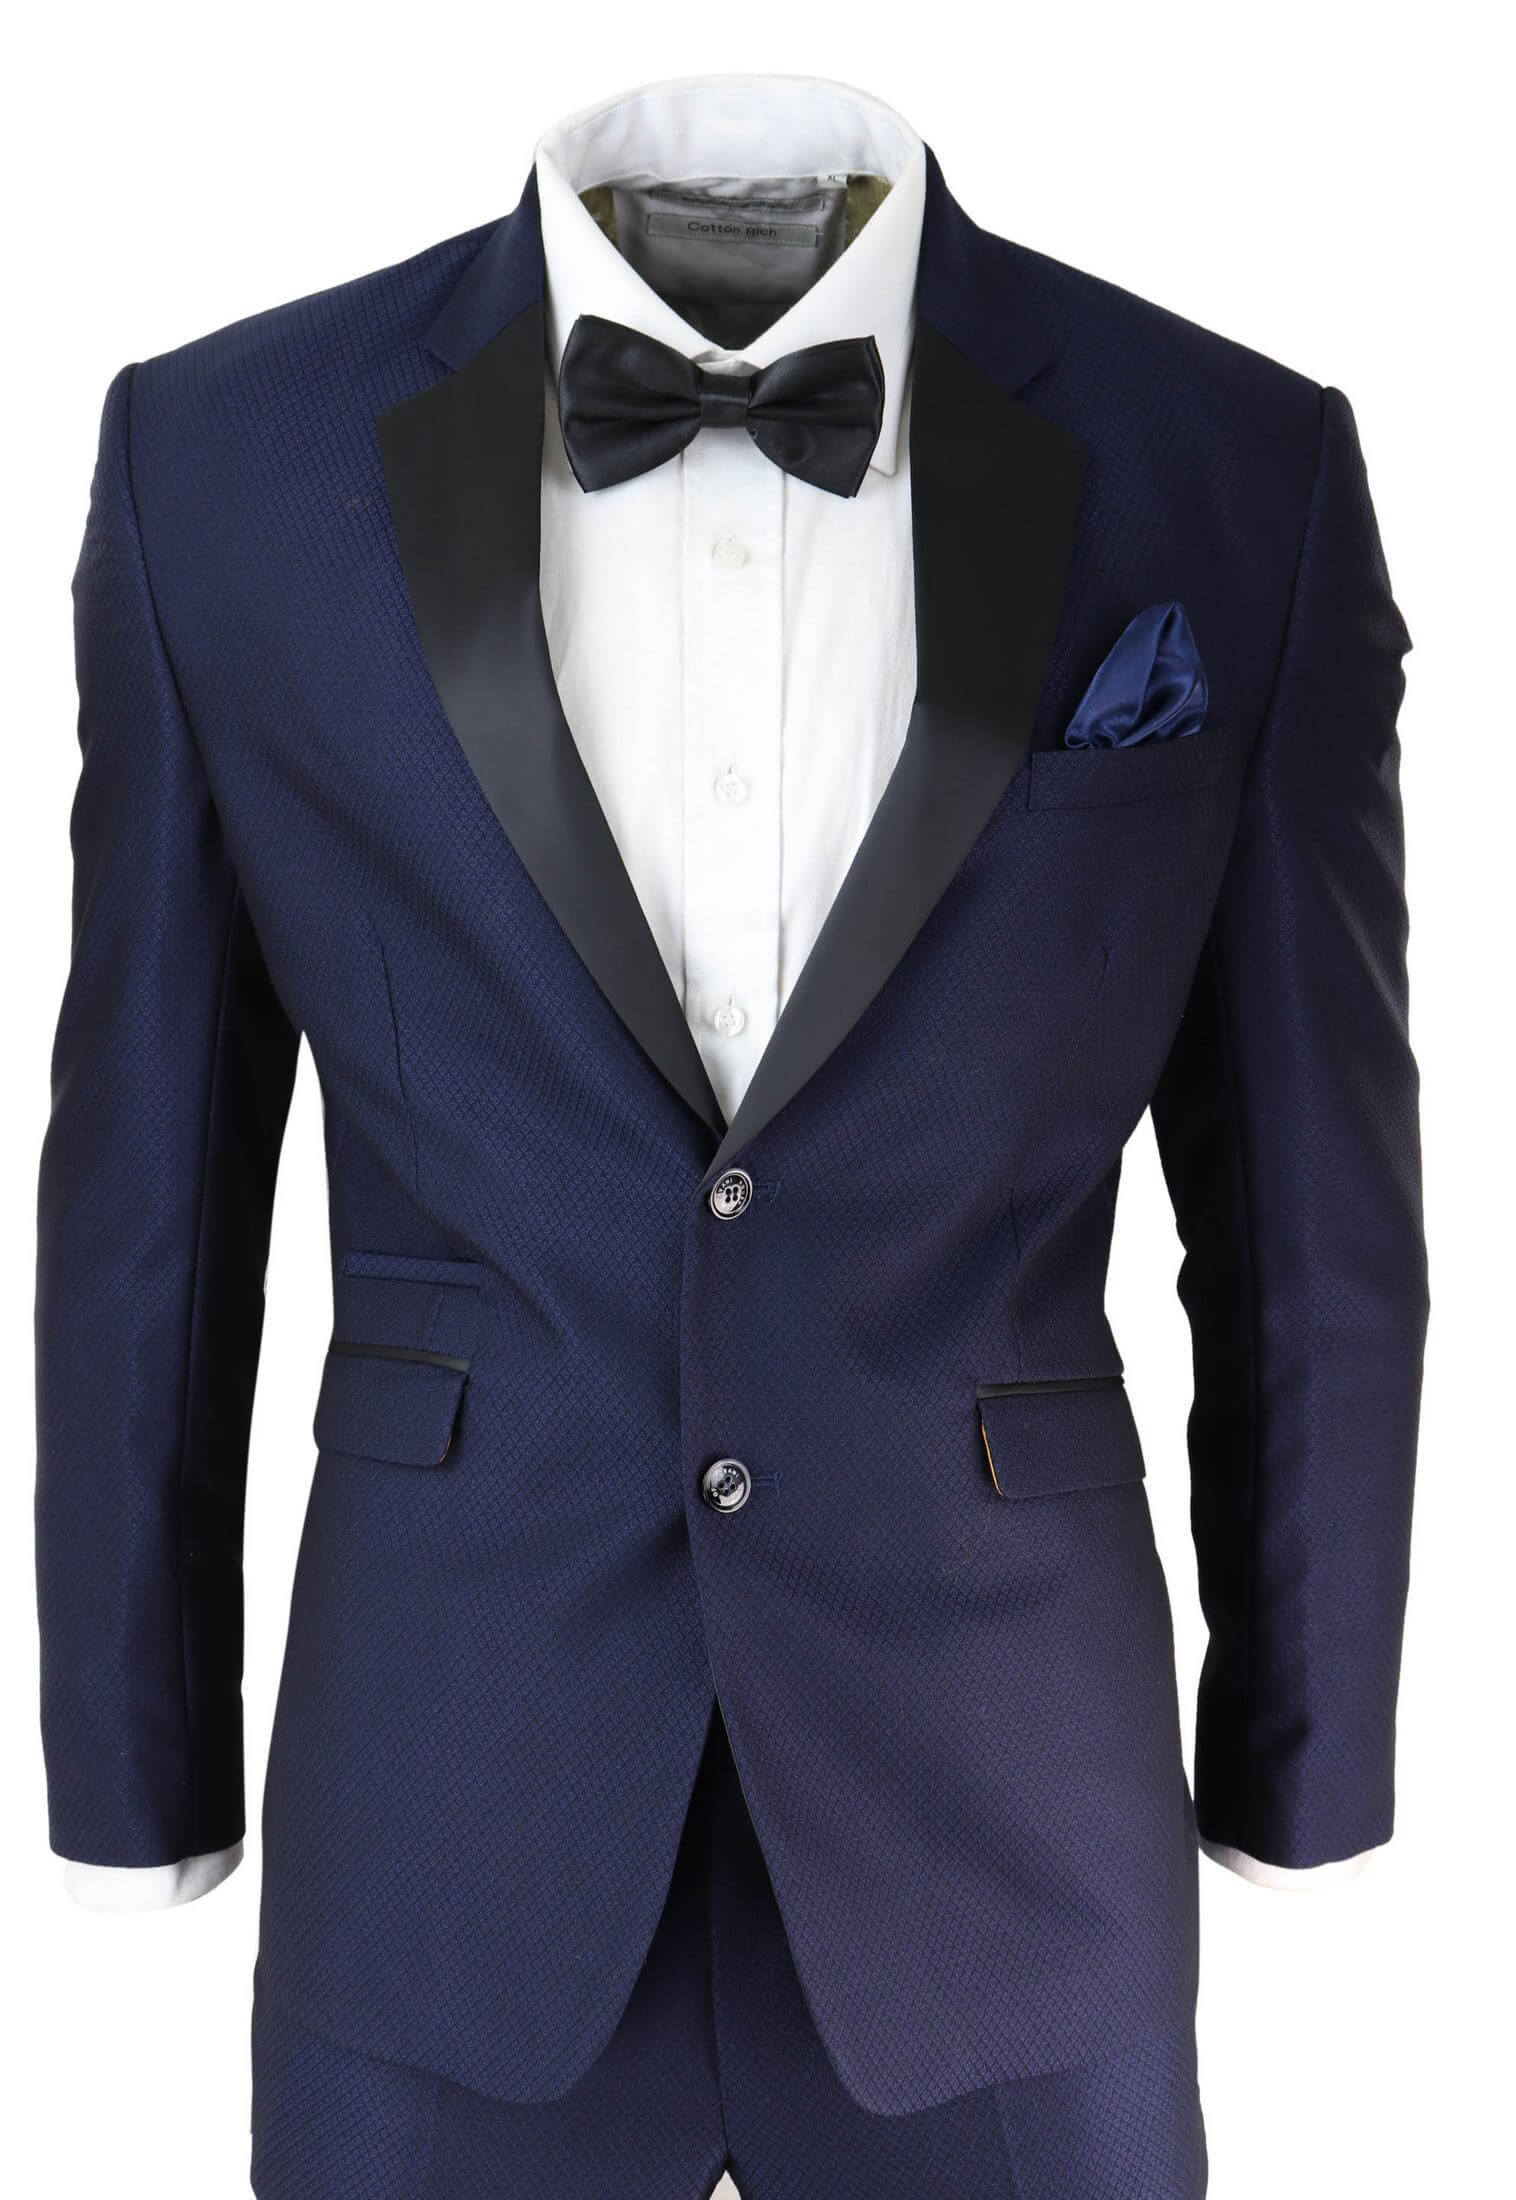 Mens Blue Tuxedo Dinner Suit Buy Online Happy Gentleman | Free Hot Nude ...